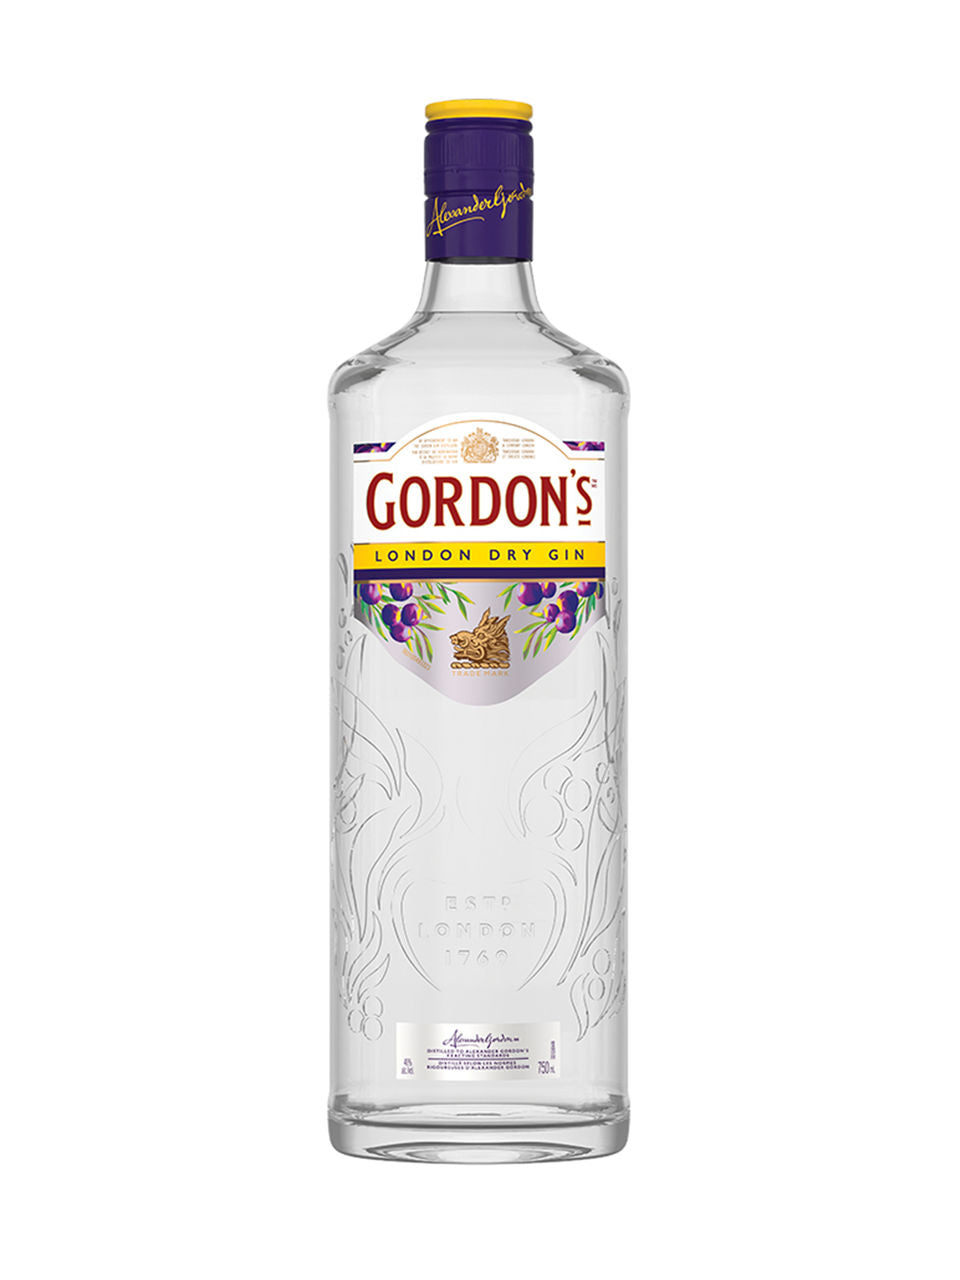 Gordon's Dry Gin 750 mL bottle